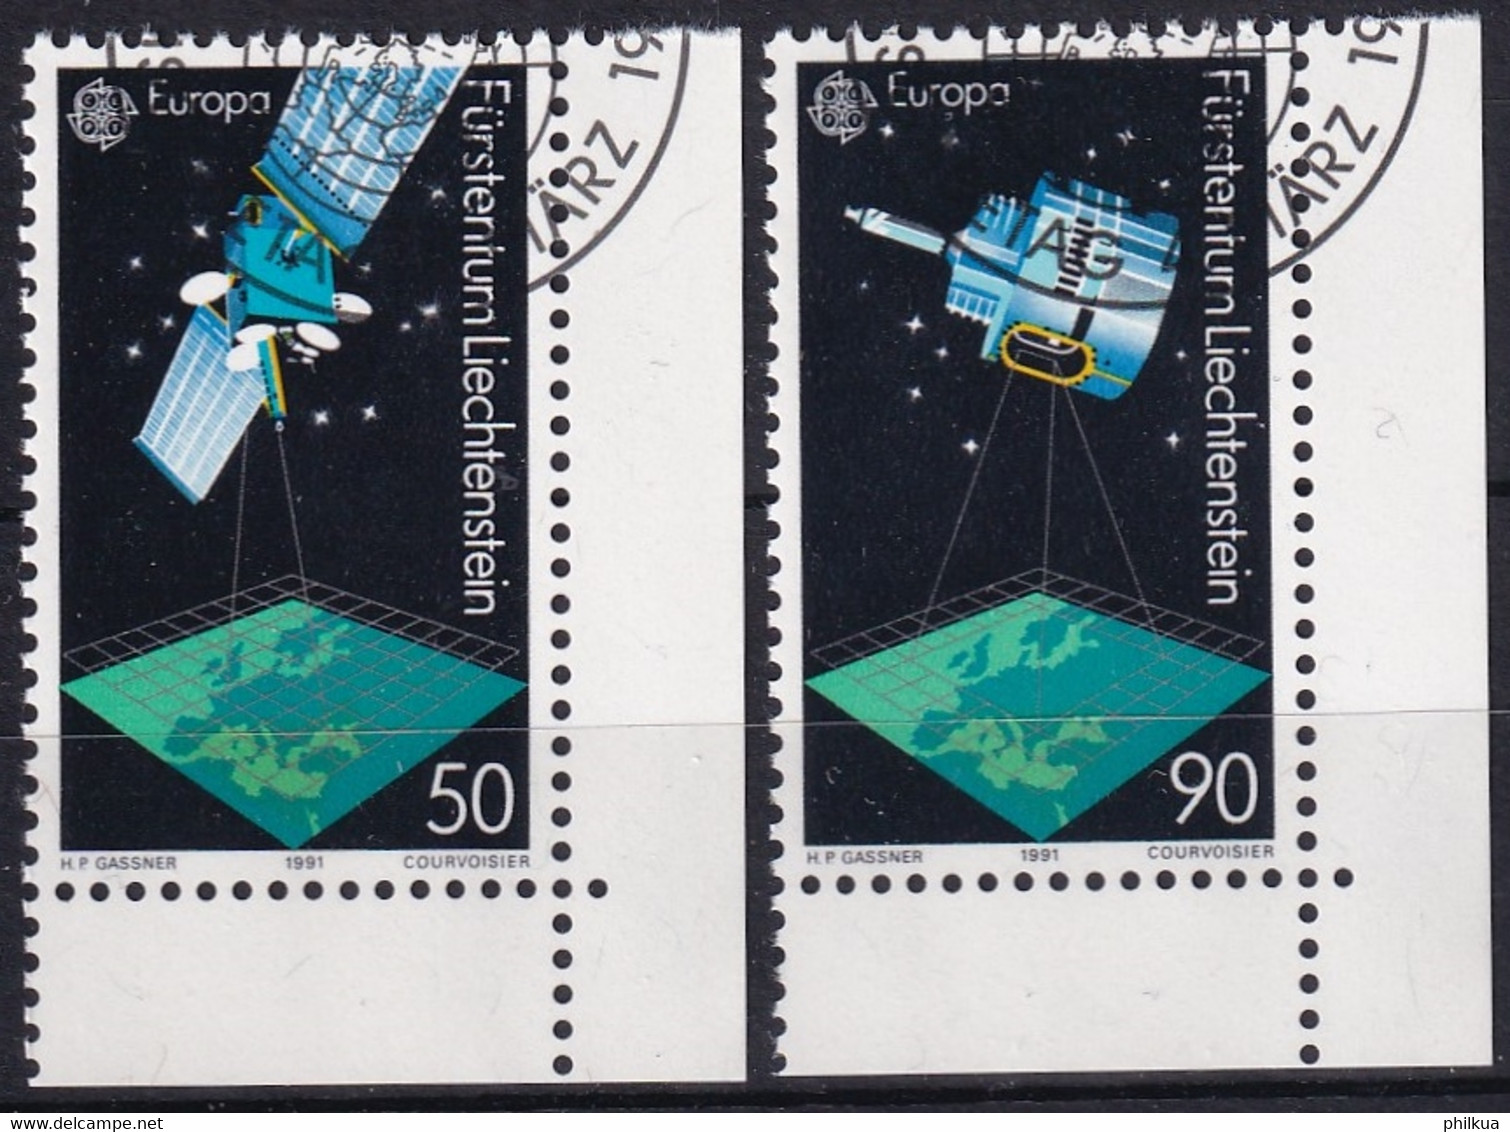 MiNr. 1011 - 1012  Liechtenstein1991, 4. März. Europa: Europäische Weltraumfahrt - Europa